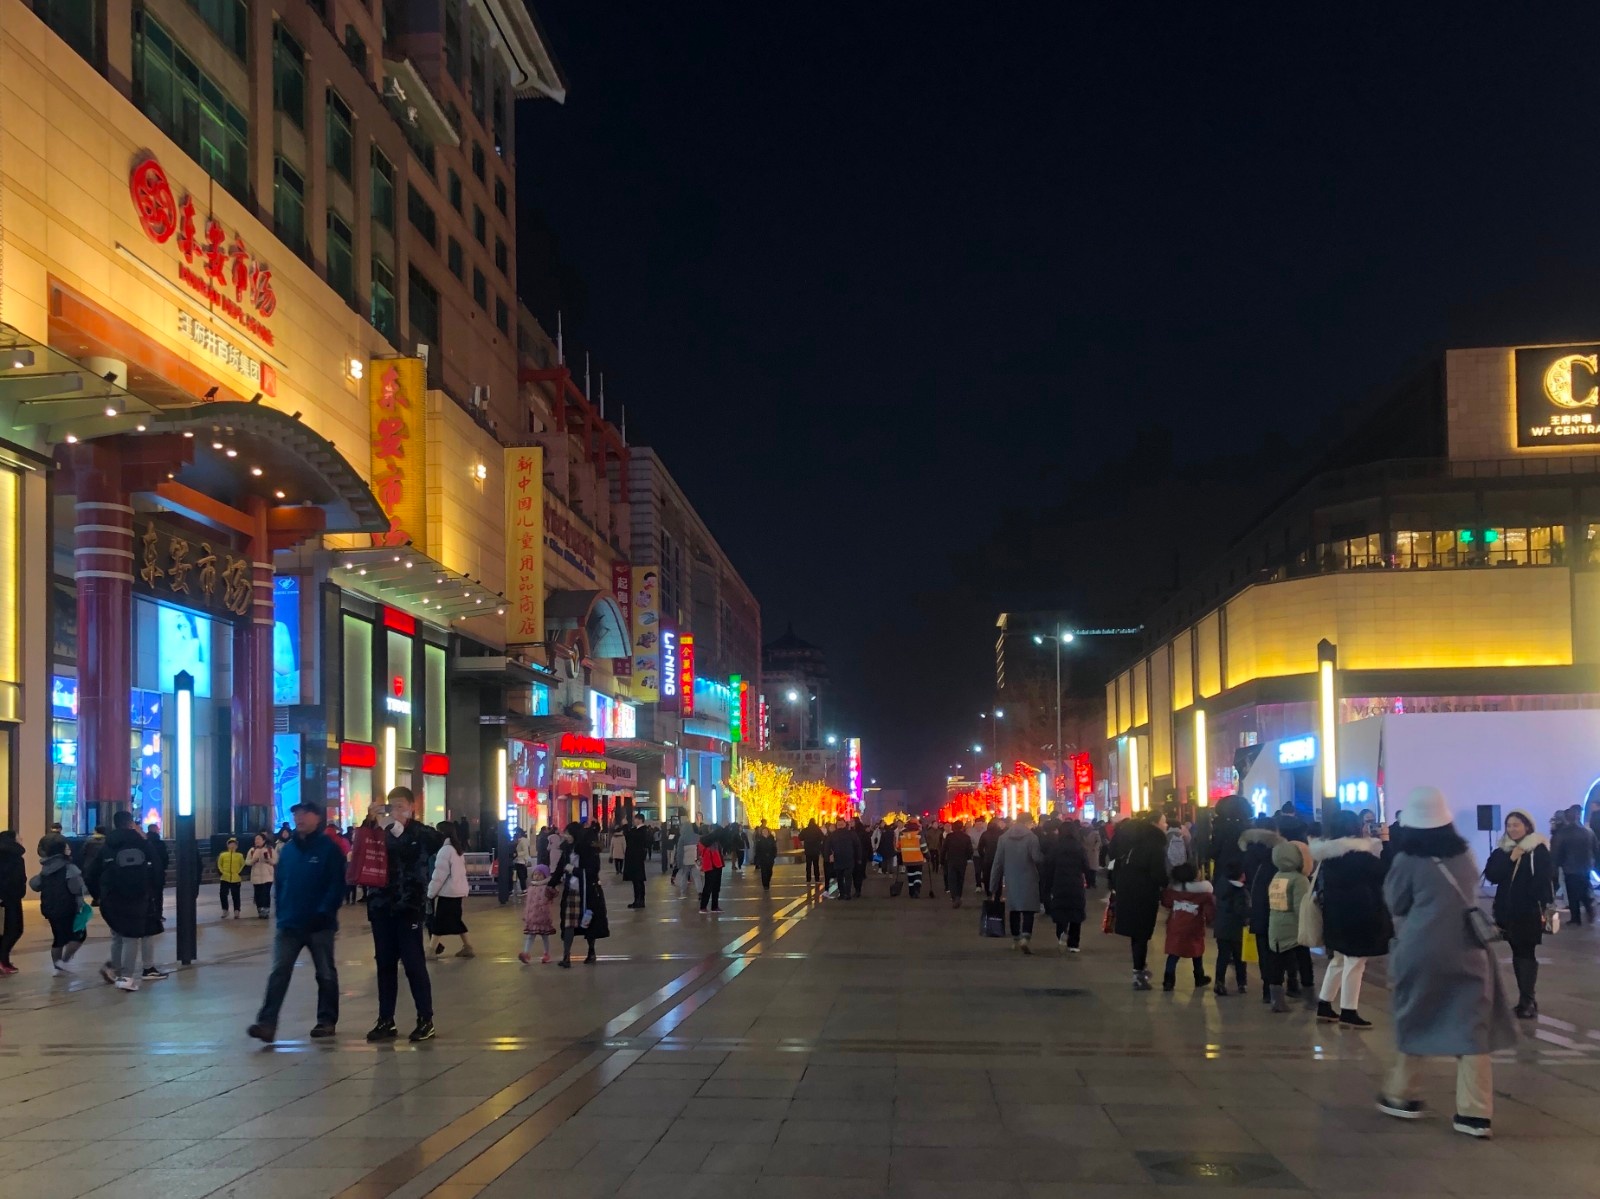 夜经济、业态创新……2020年中国商业十大热点全盘展望-中国商网|中国商报社0